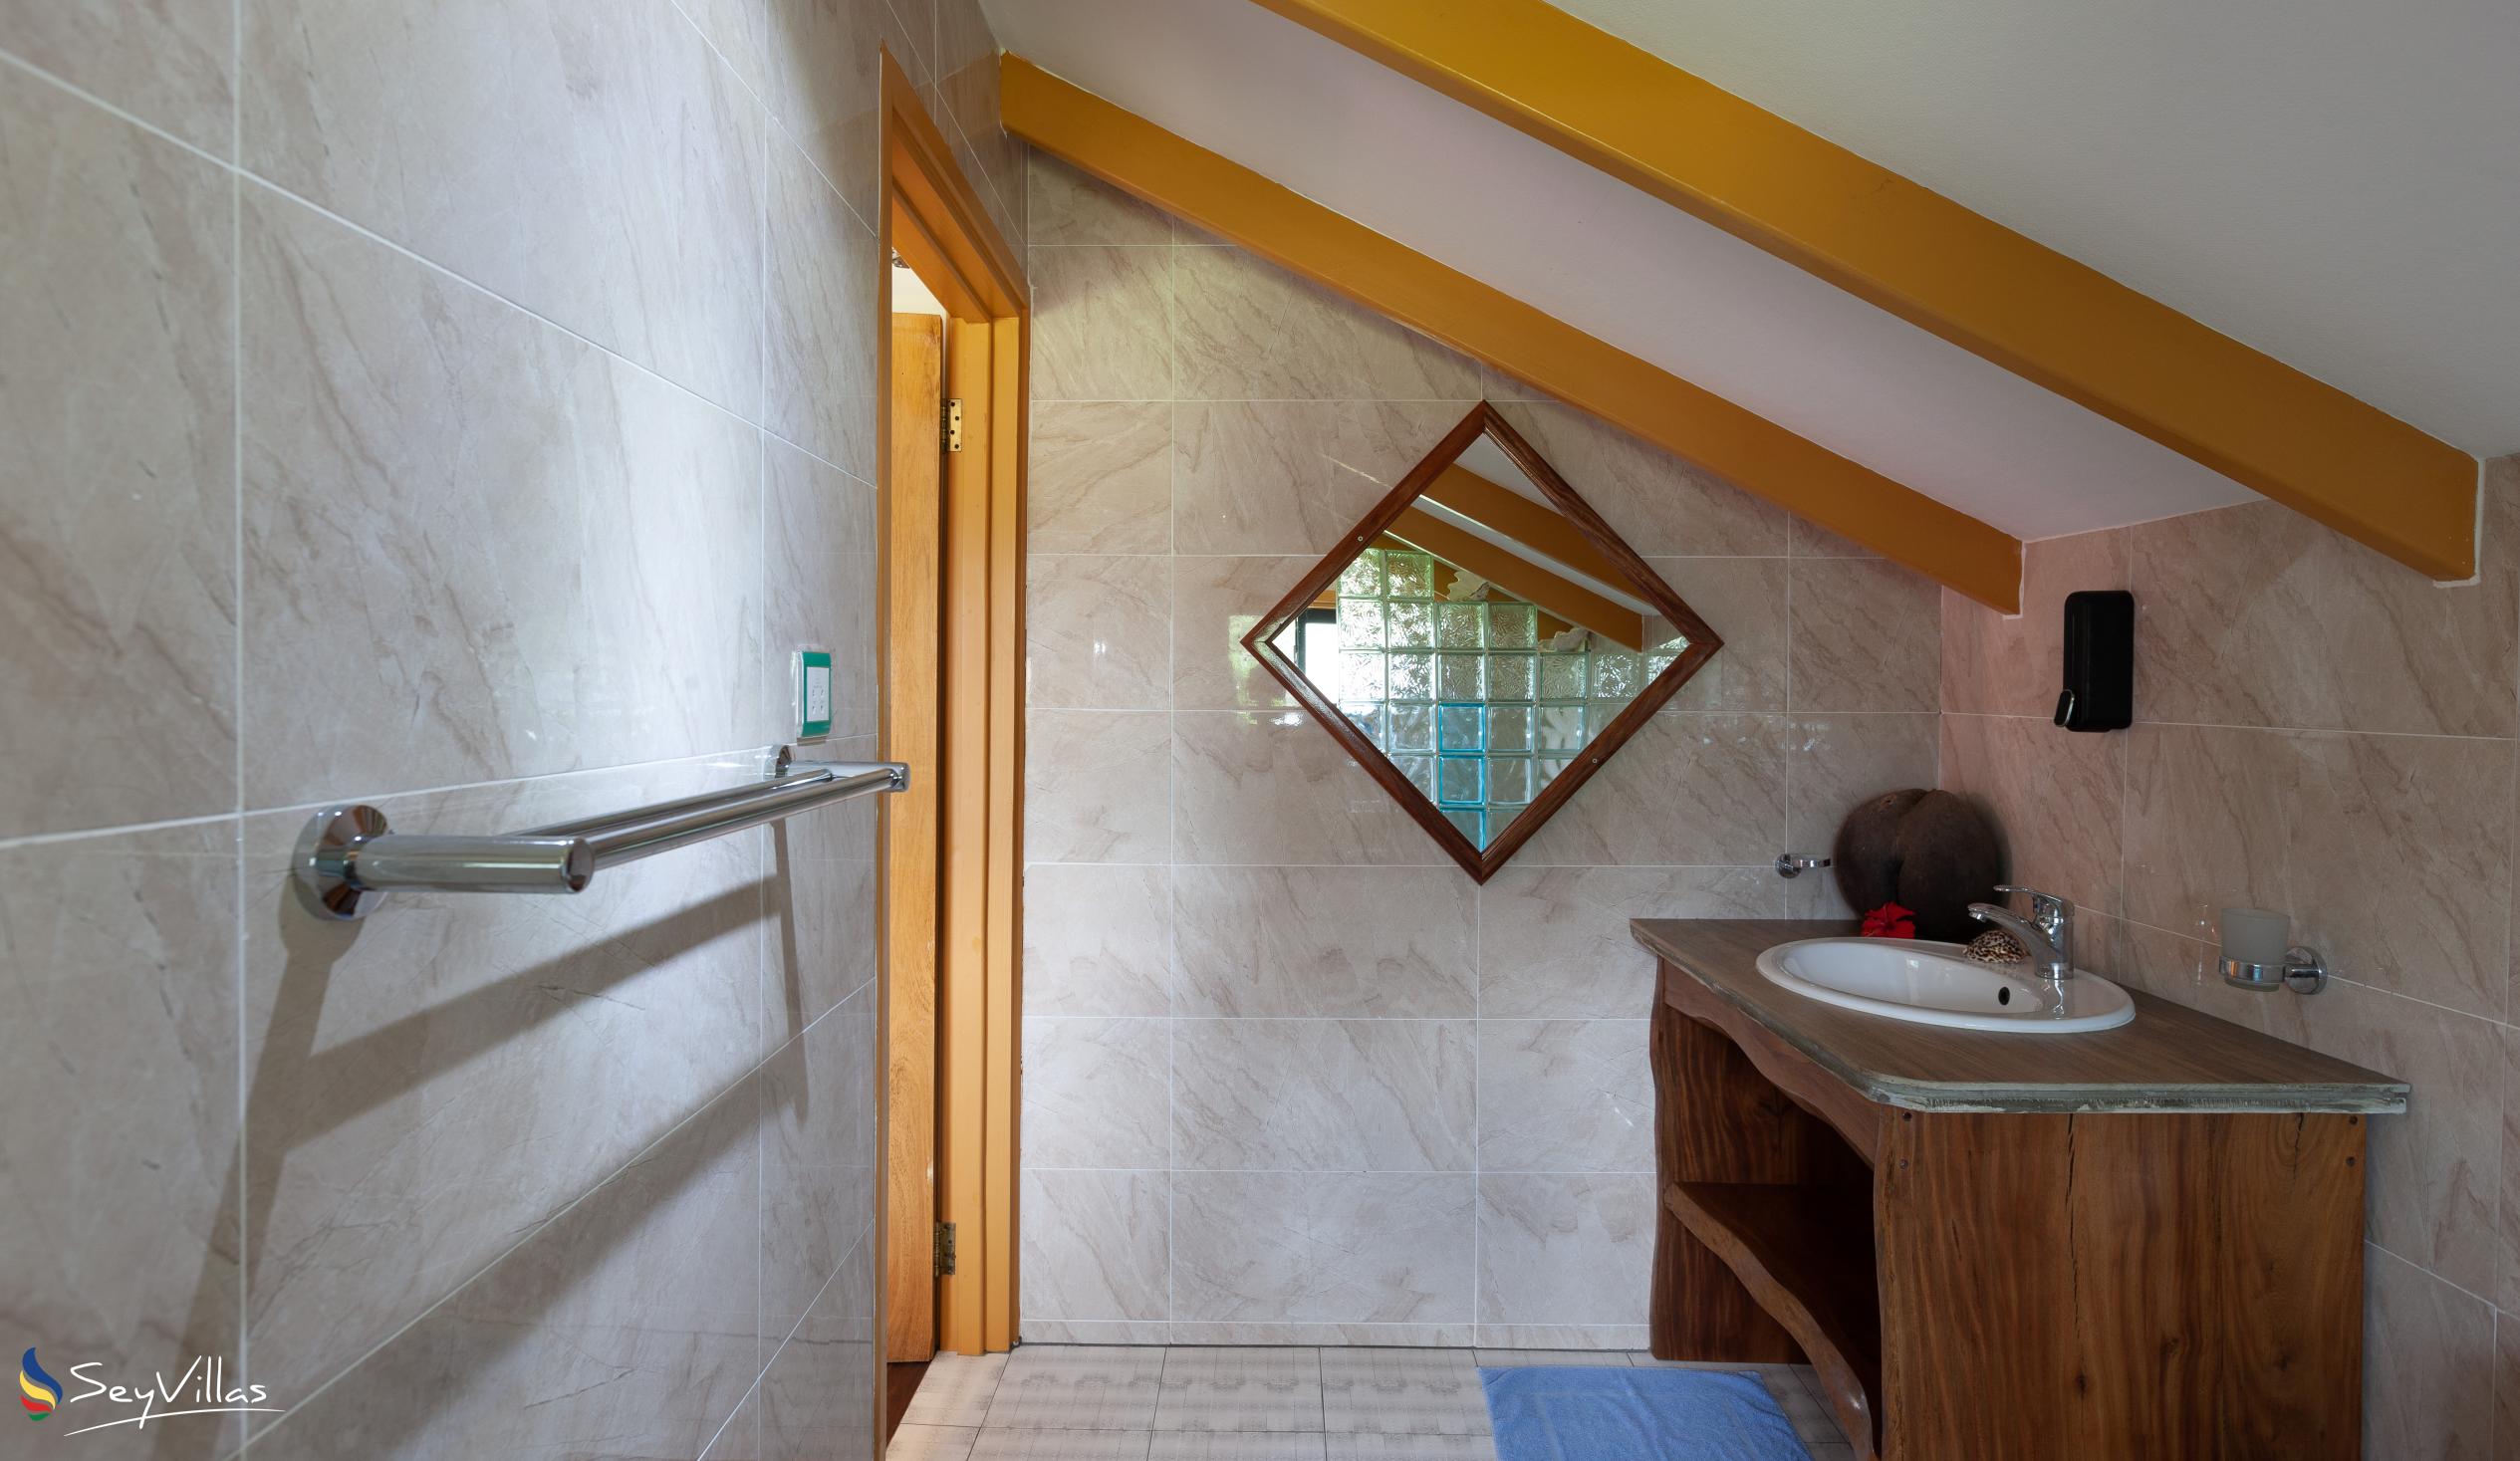 Photo 49: Bwaver Cottage - Superior Apartment - La Digue (Seychelles)